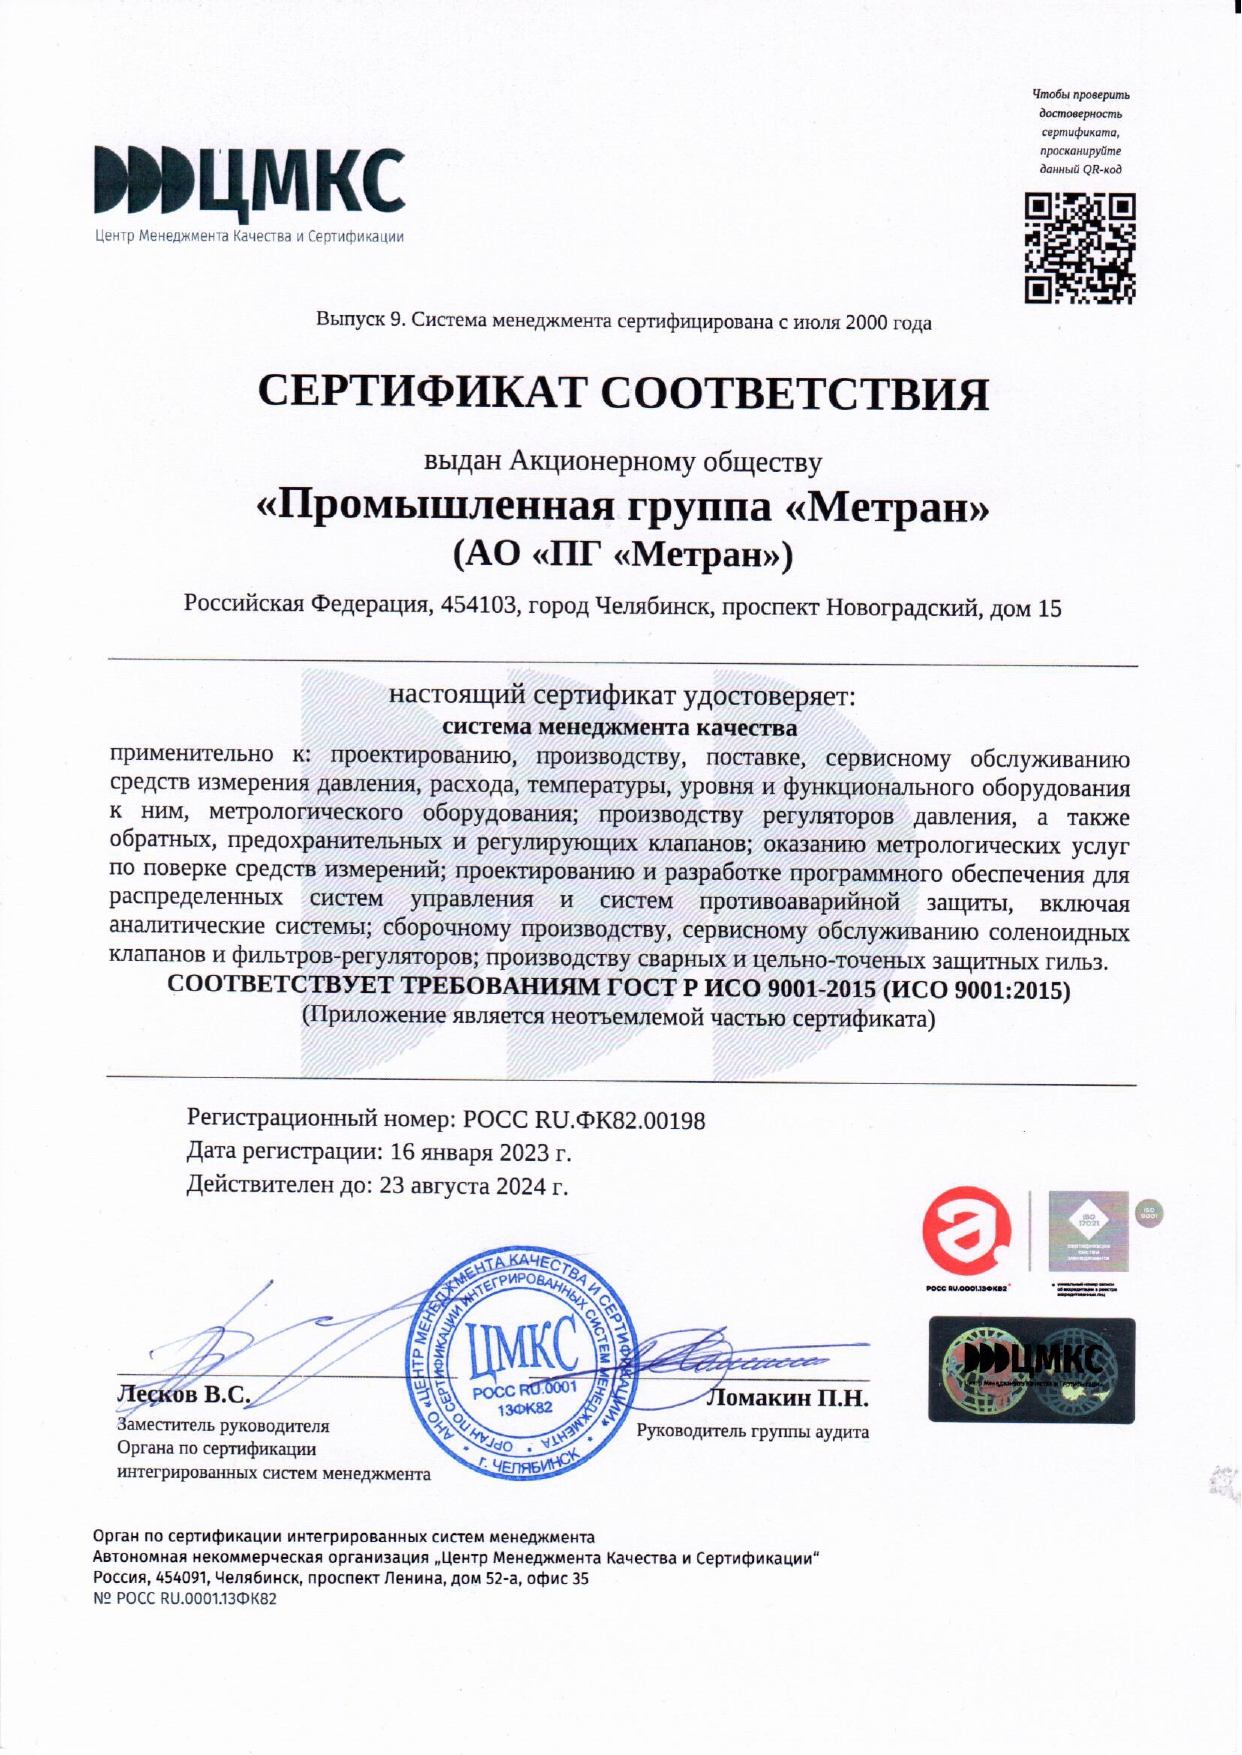 Сертификат ПГ Метран 2023.jpg